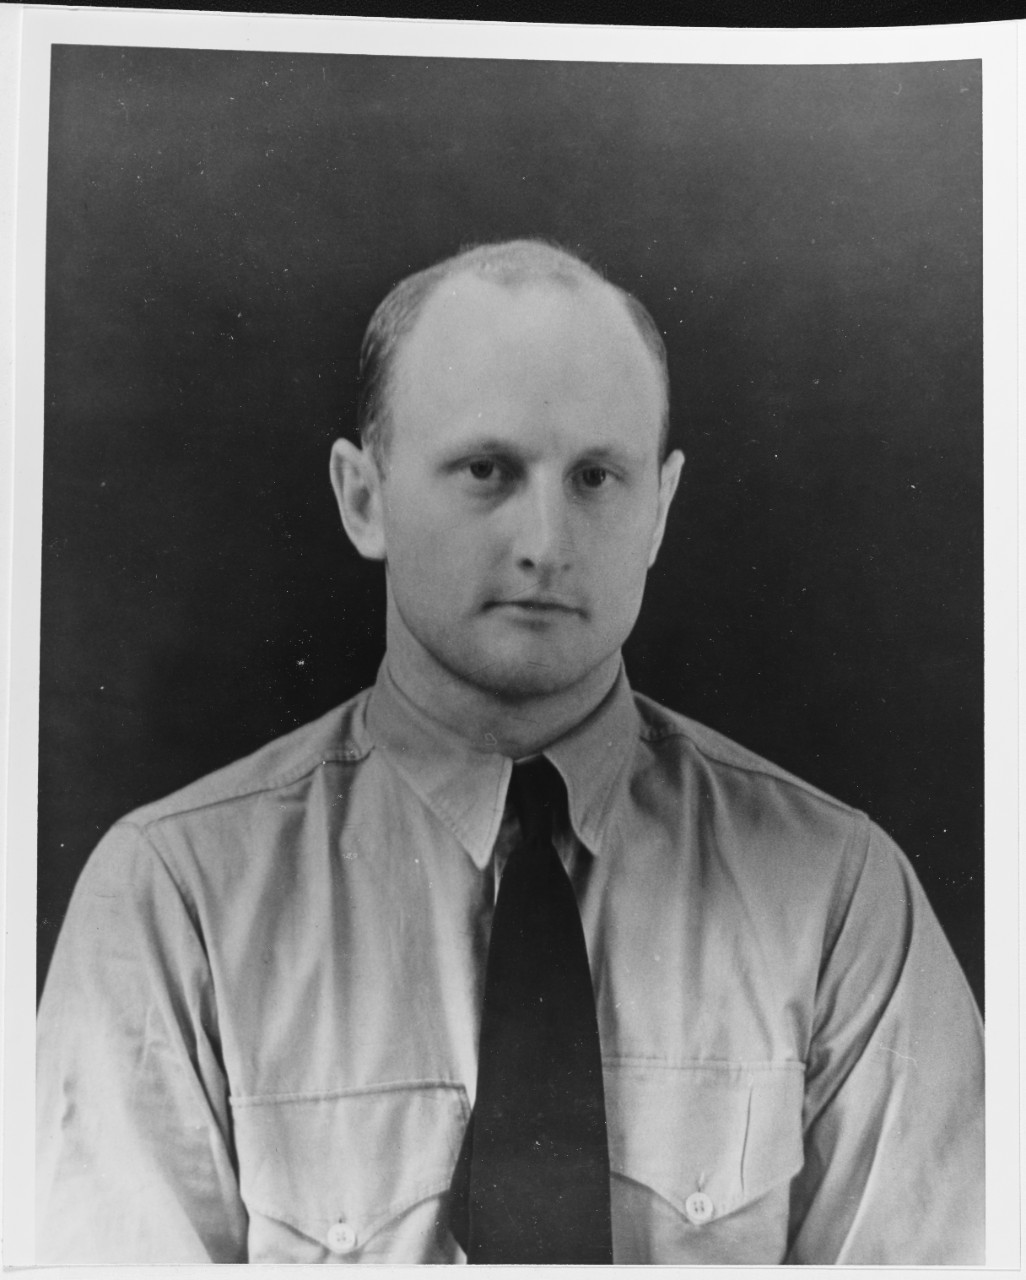 Francis F. Hebel, aviation cadet, USNR (1912-1941)